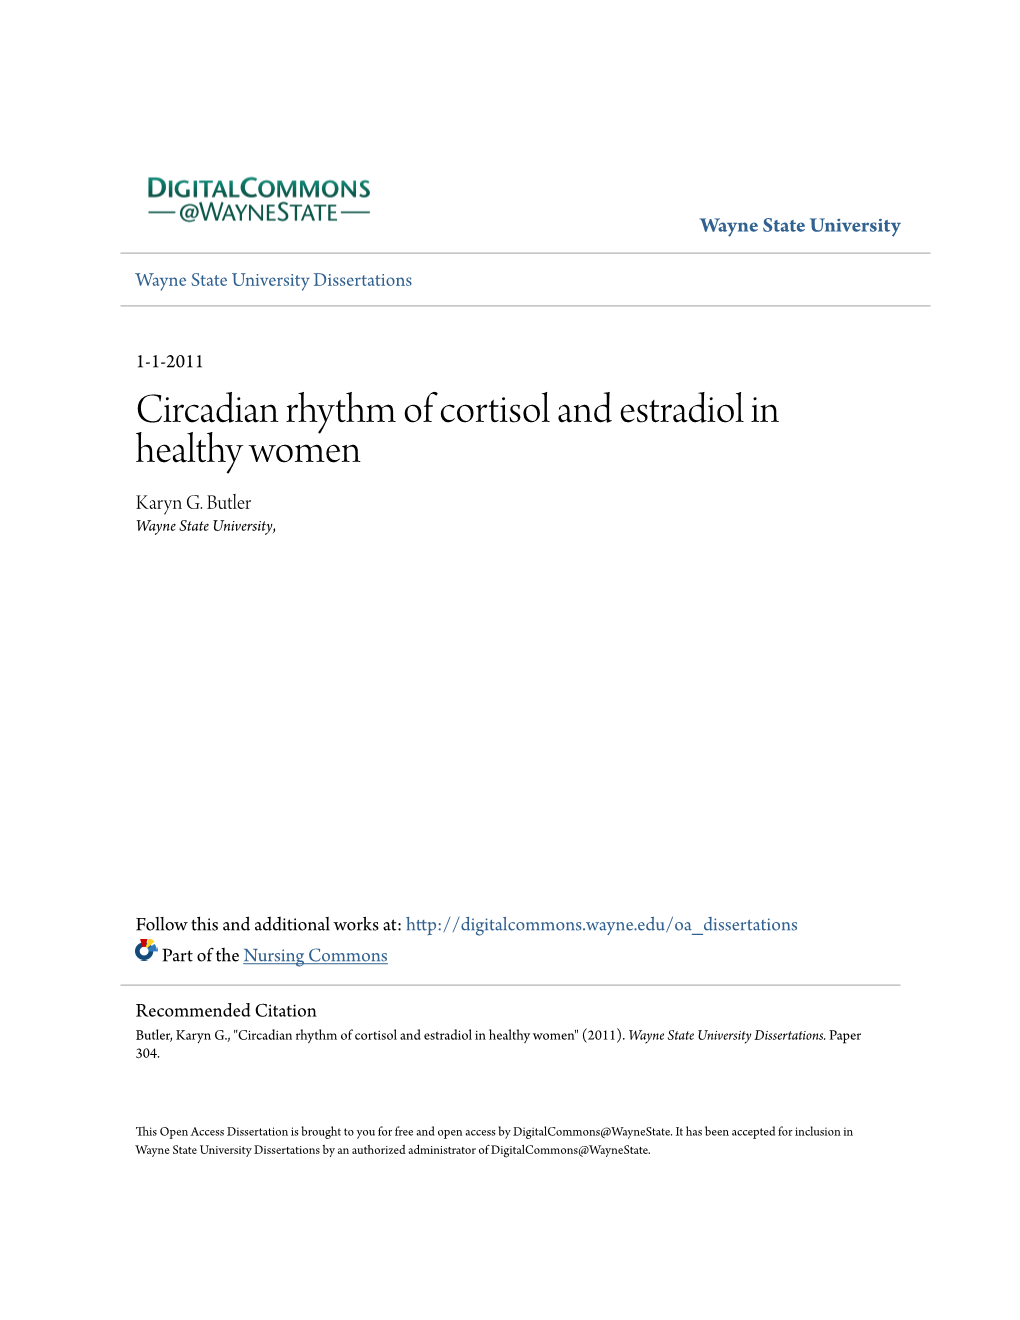 Circadian Rhythm of Cortisol and Estradiol in Healthy Women Karyn G